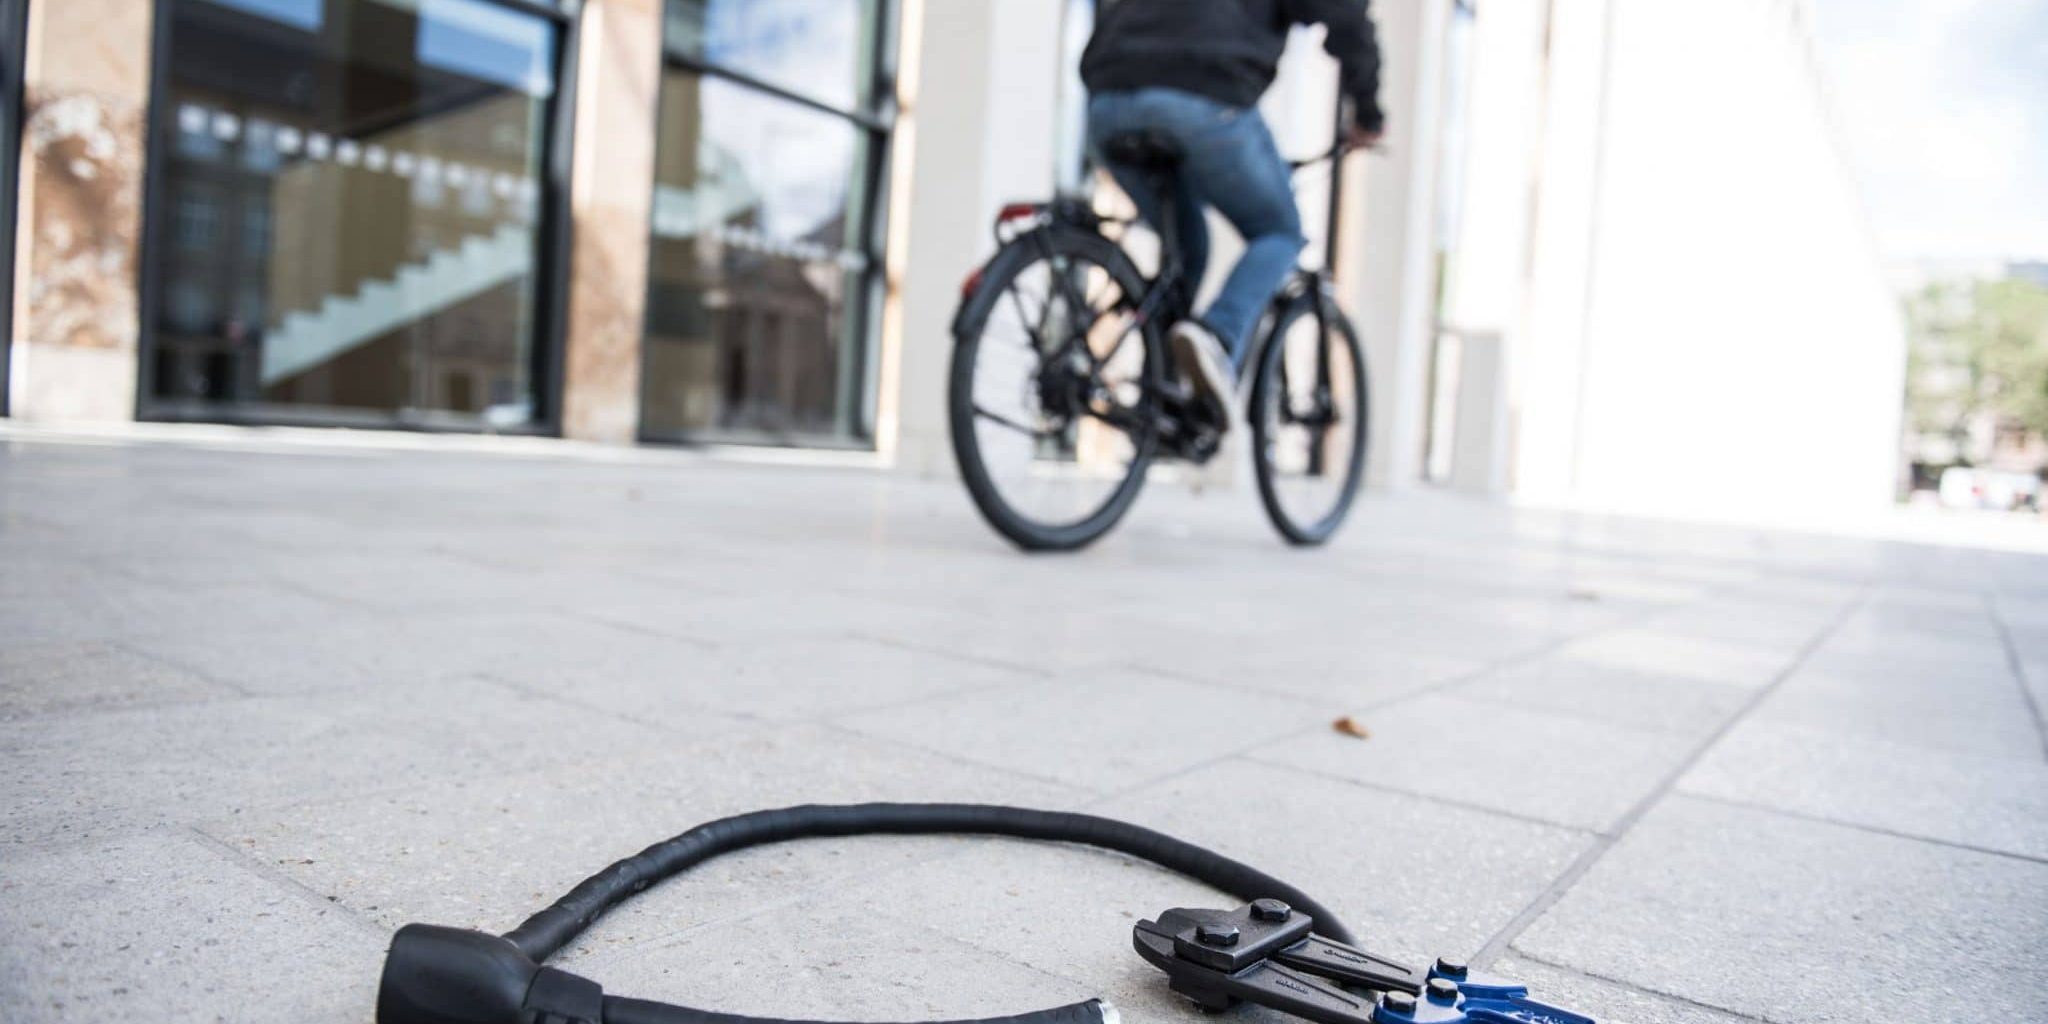 Mann fährt mit Fahrrad davon, aufgetrenntes Fahrradschloss liegt mit Zange auf dem Boden